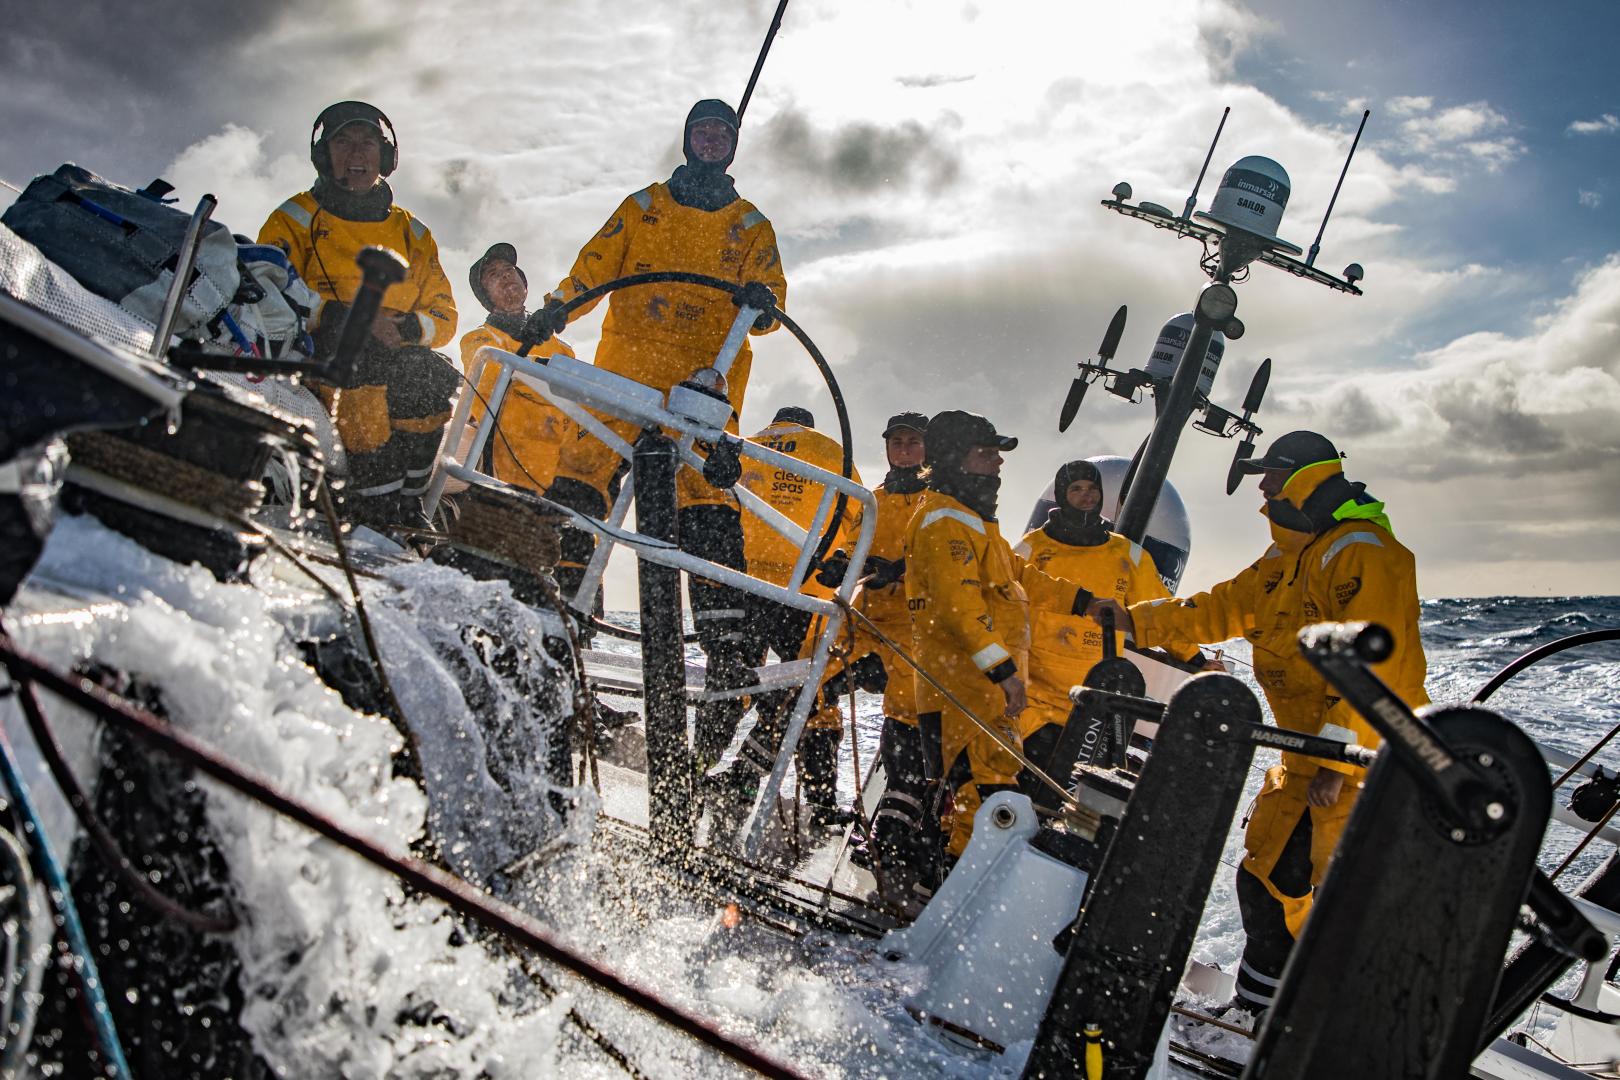 Volvo Ocean Race Leg 3, da Città del Capo a Melbourne, a bordo di Turn the Tide on Plastic